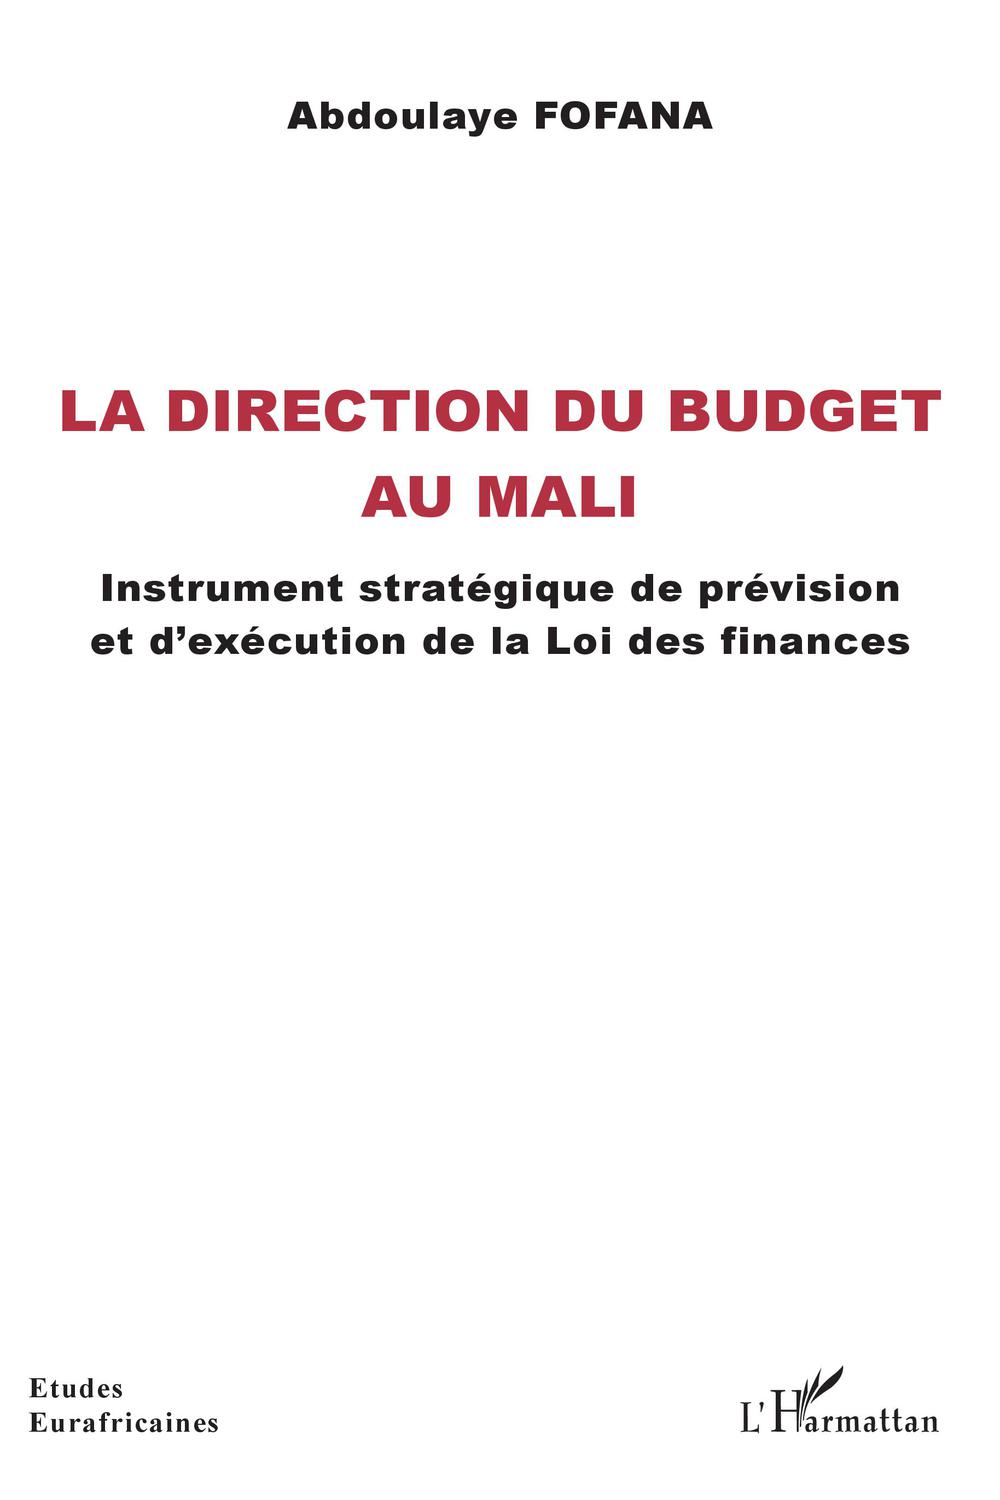 La direction du budget au Mali - Abdoulaye Fofana